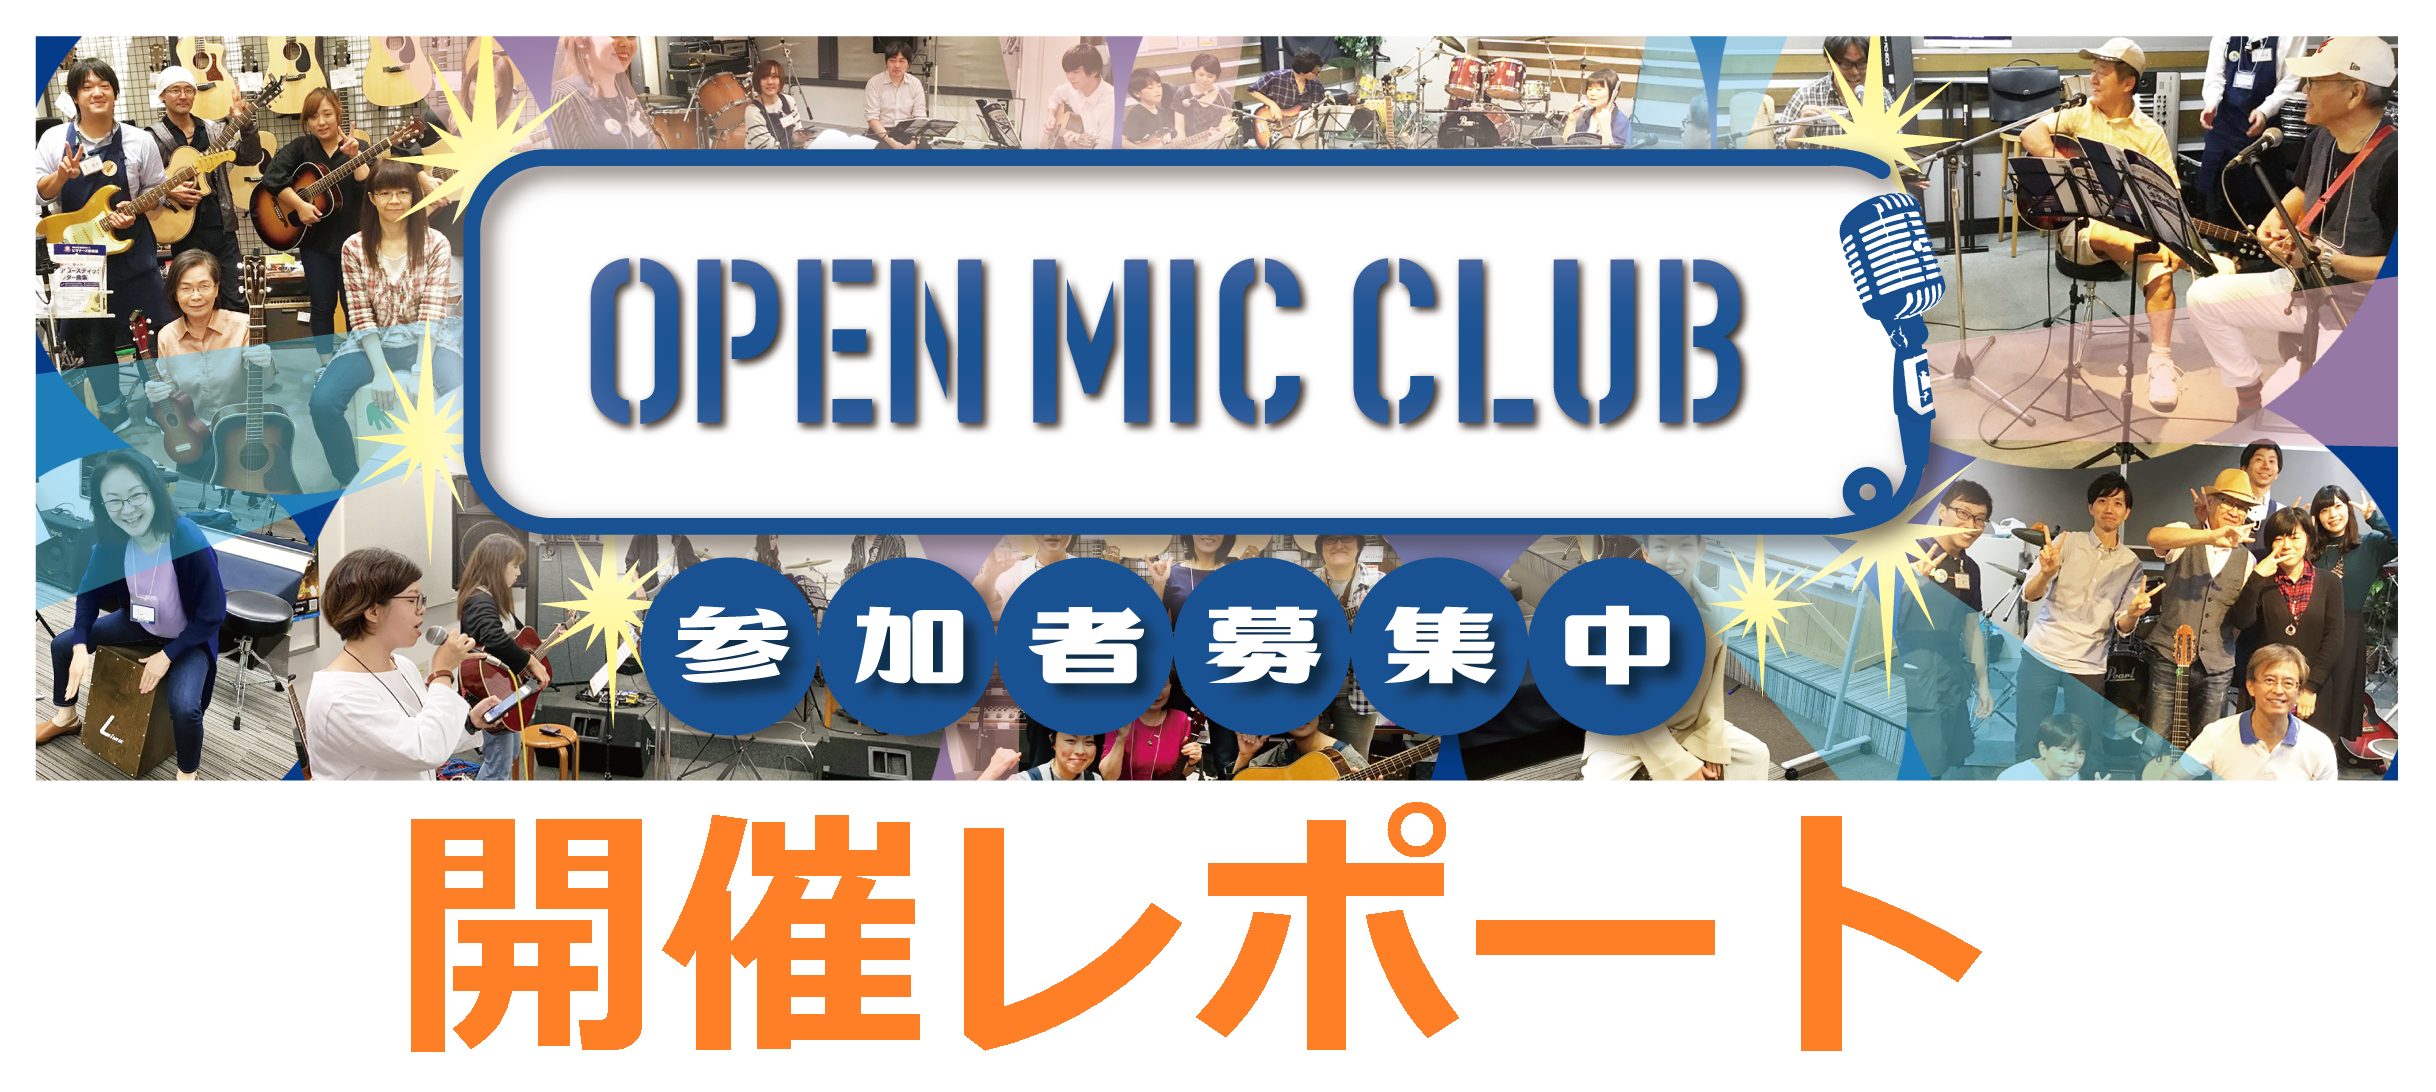 【2月12日・OMC】 OPEN MIC CLUB イオンモール長久手店 サークル活動報告